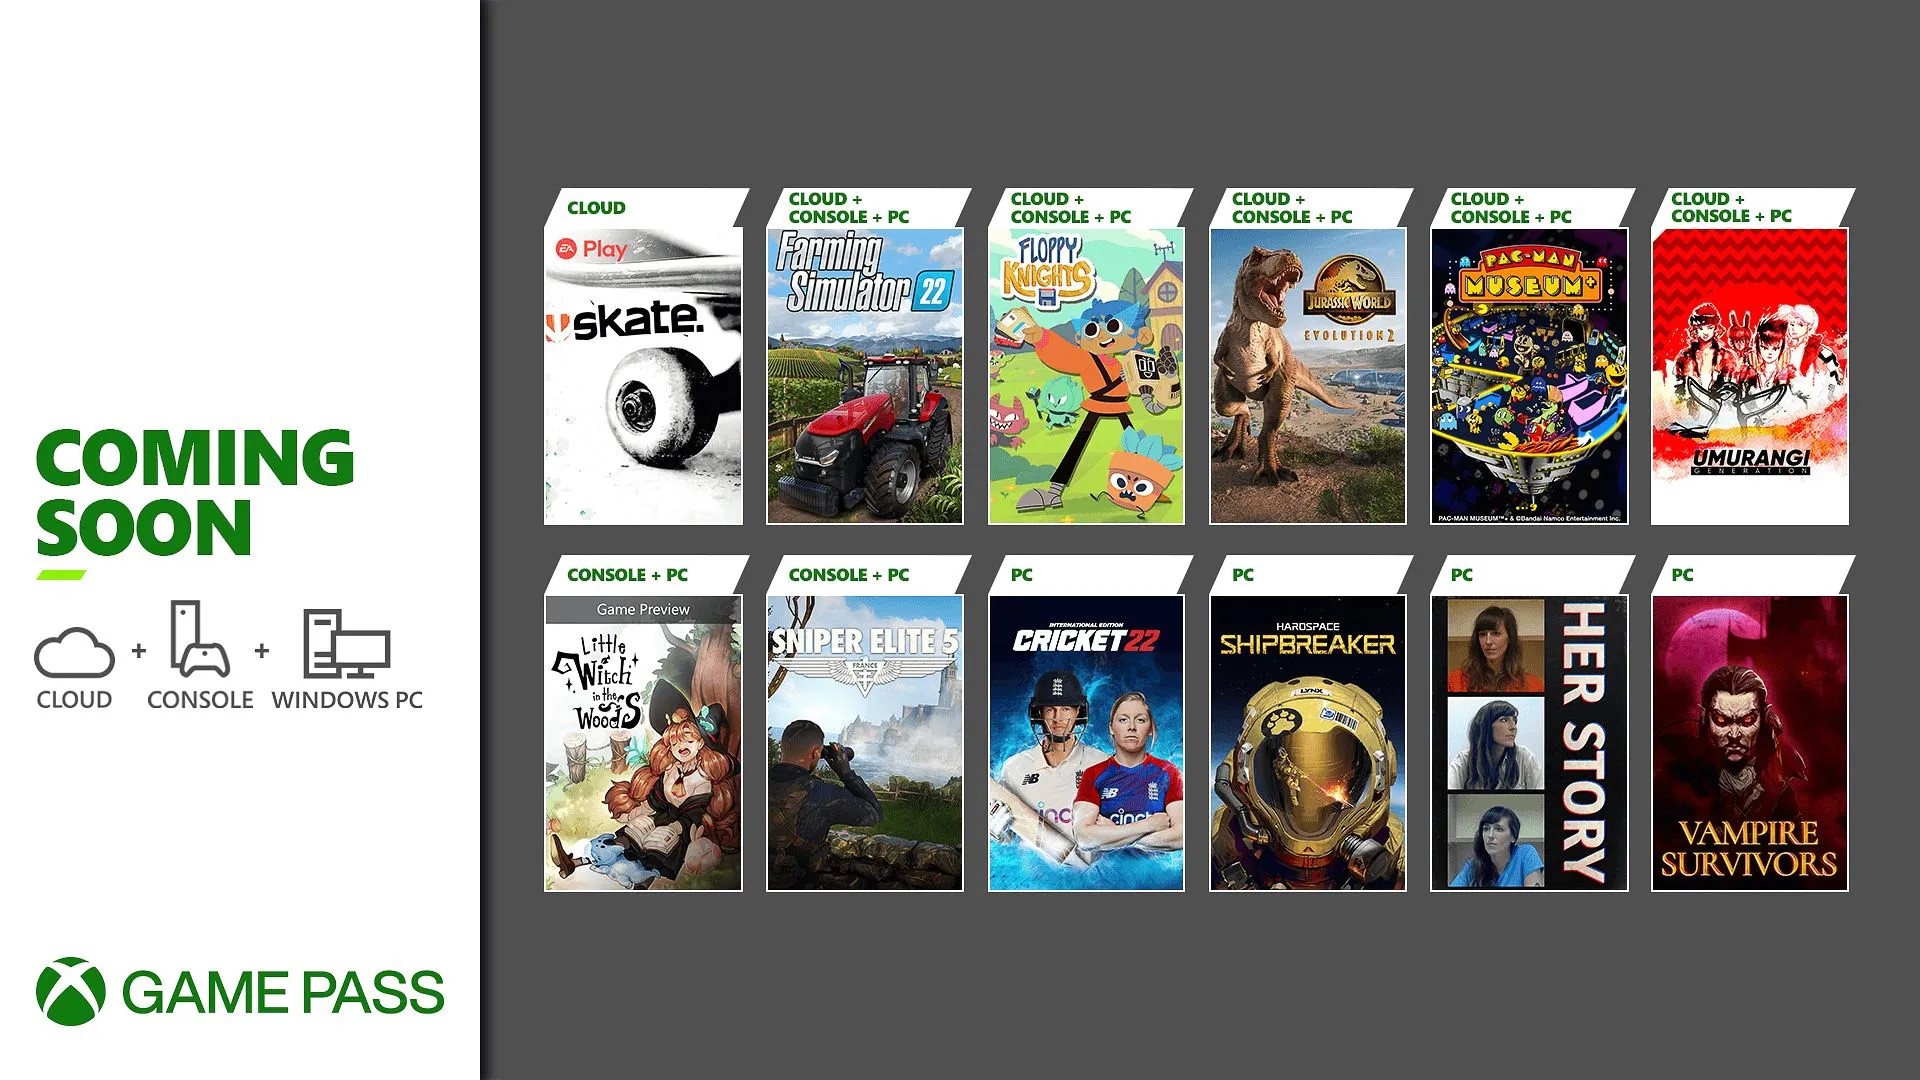 Jogos do Xbox Game Pass saindo em 31 de julho